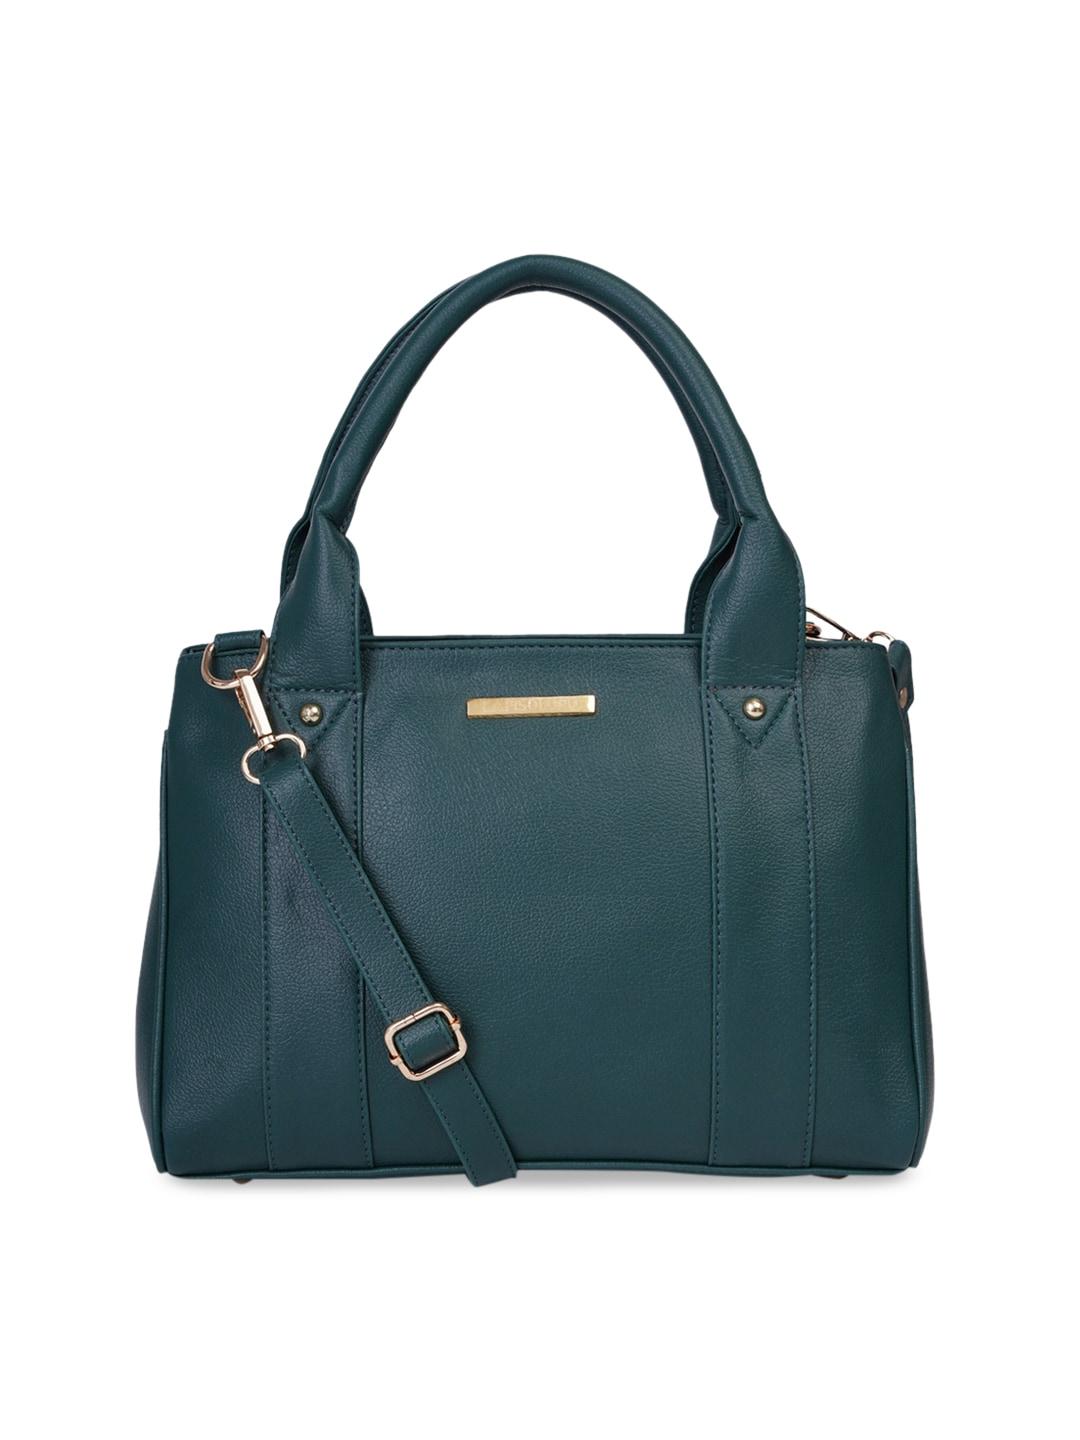 Lapis O Lupo Green Textured Handheld Bag